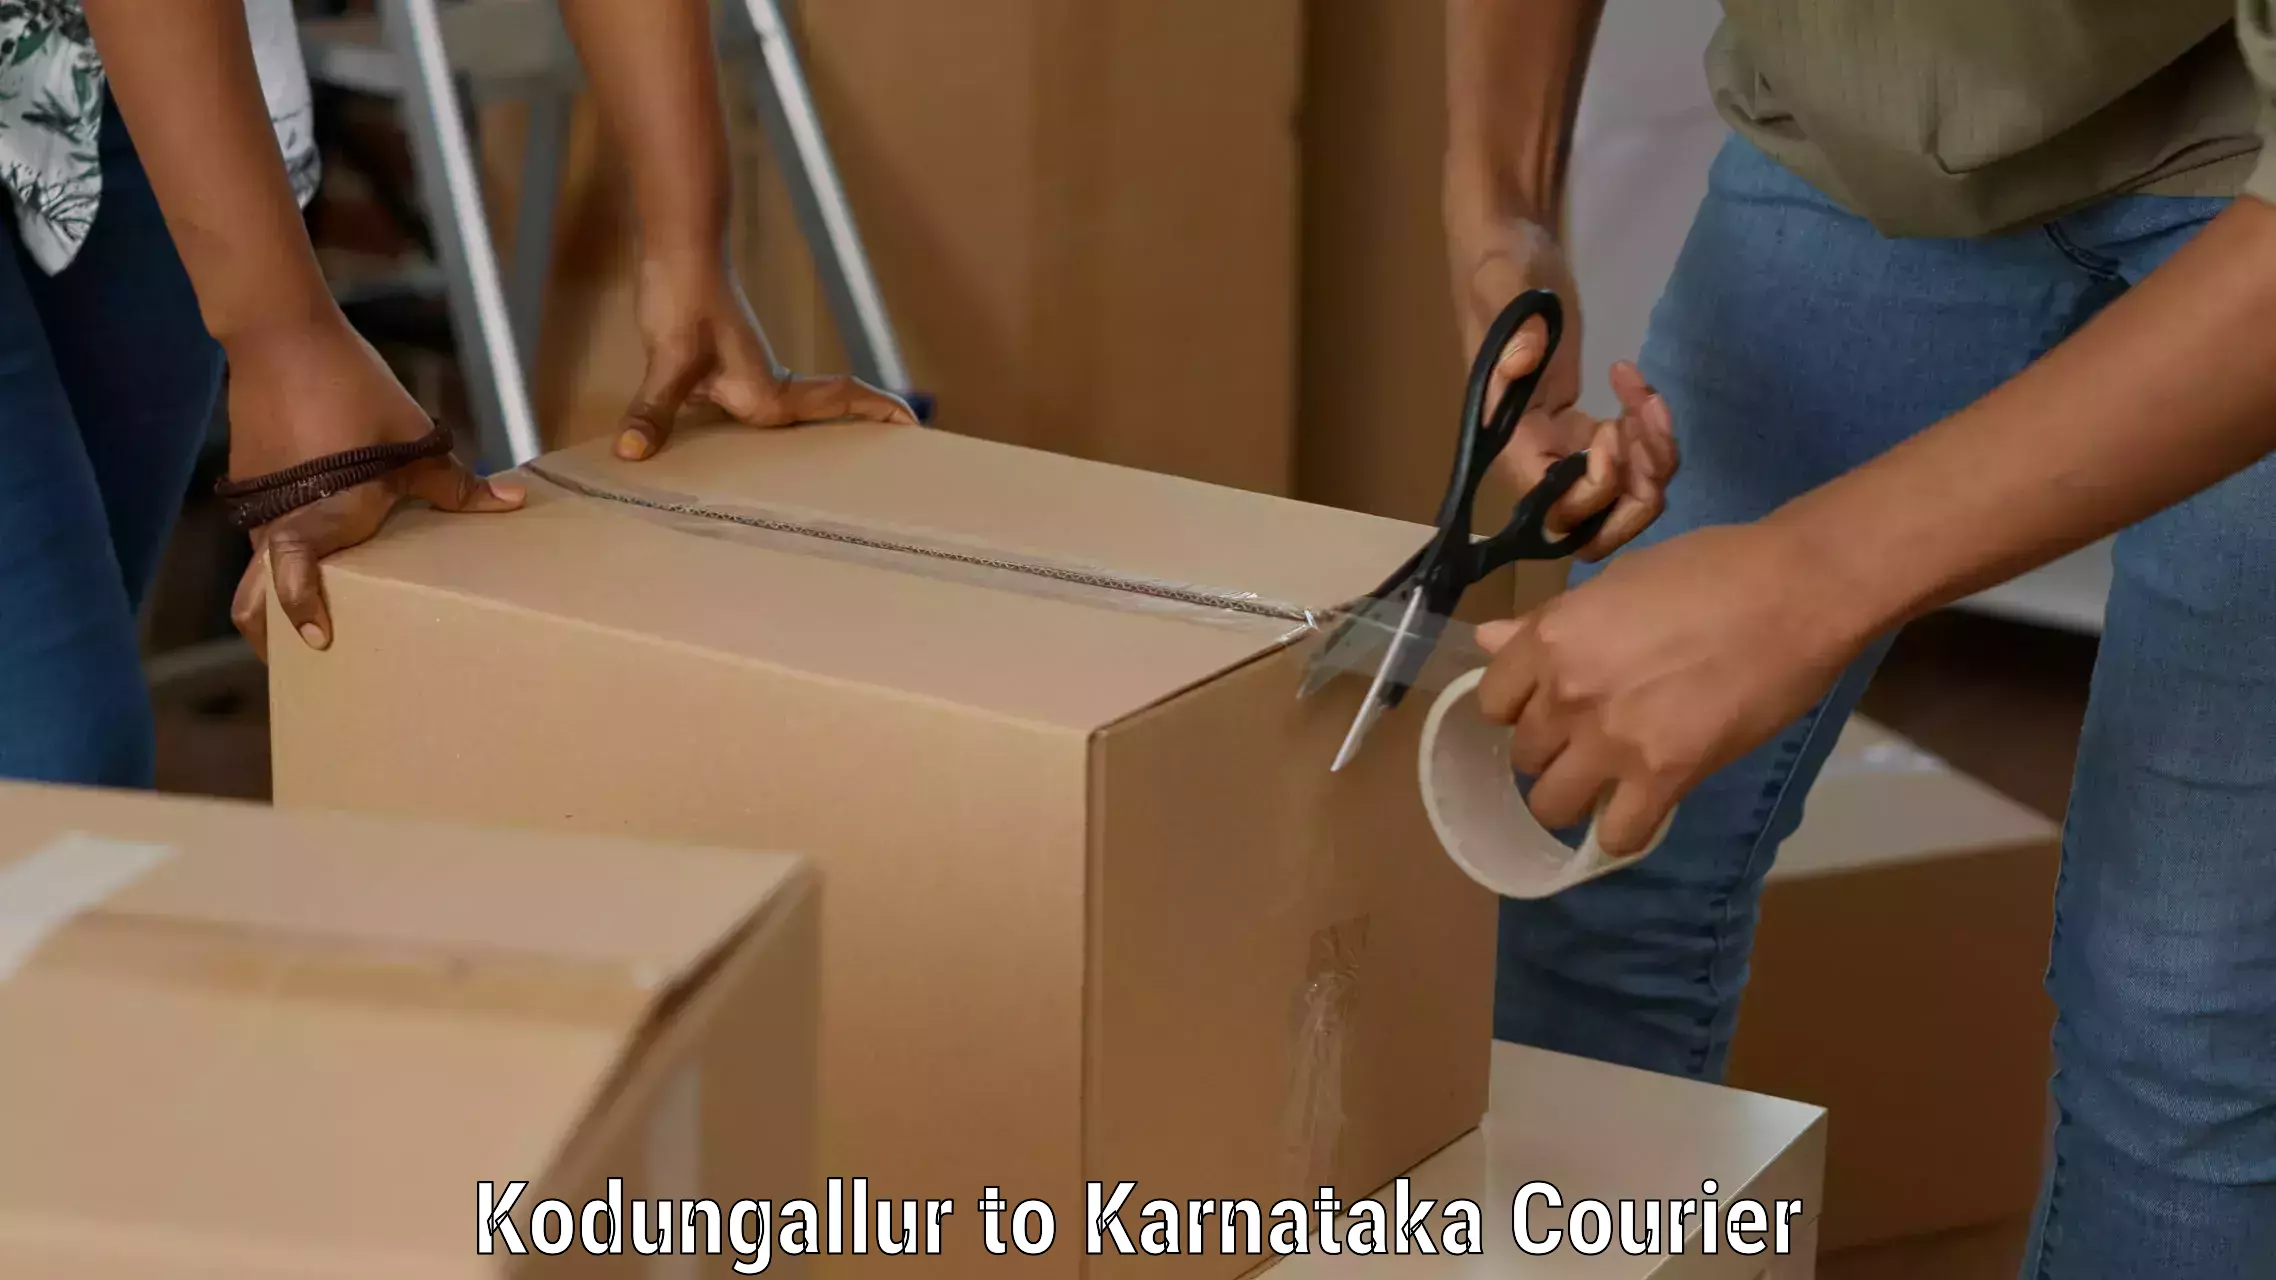 Versatile courier offerings in Kodungallur to Gurmatkal